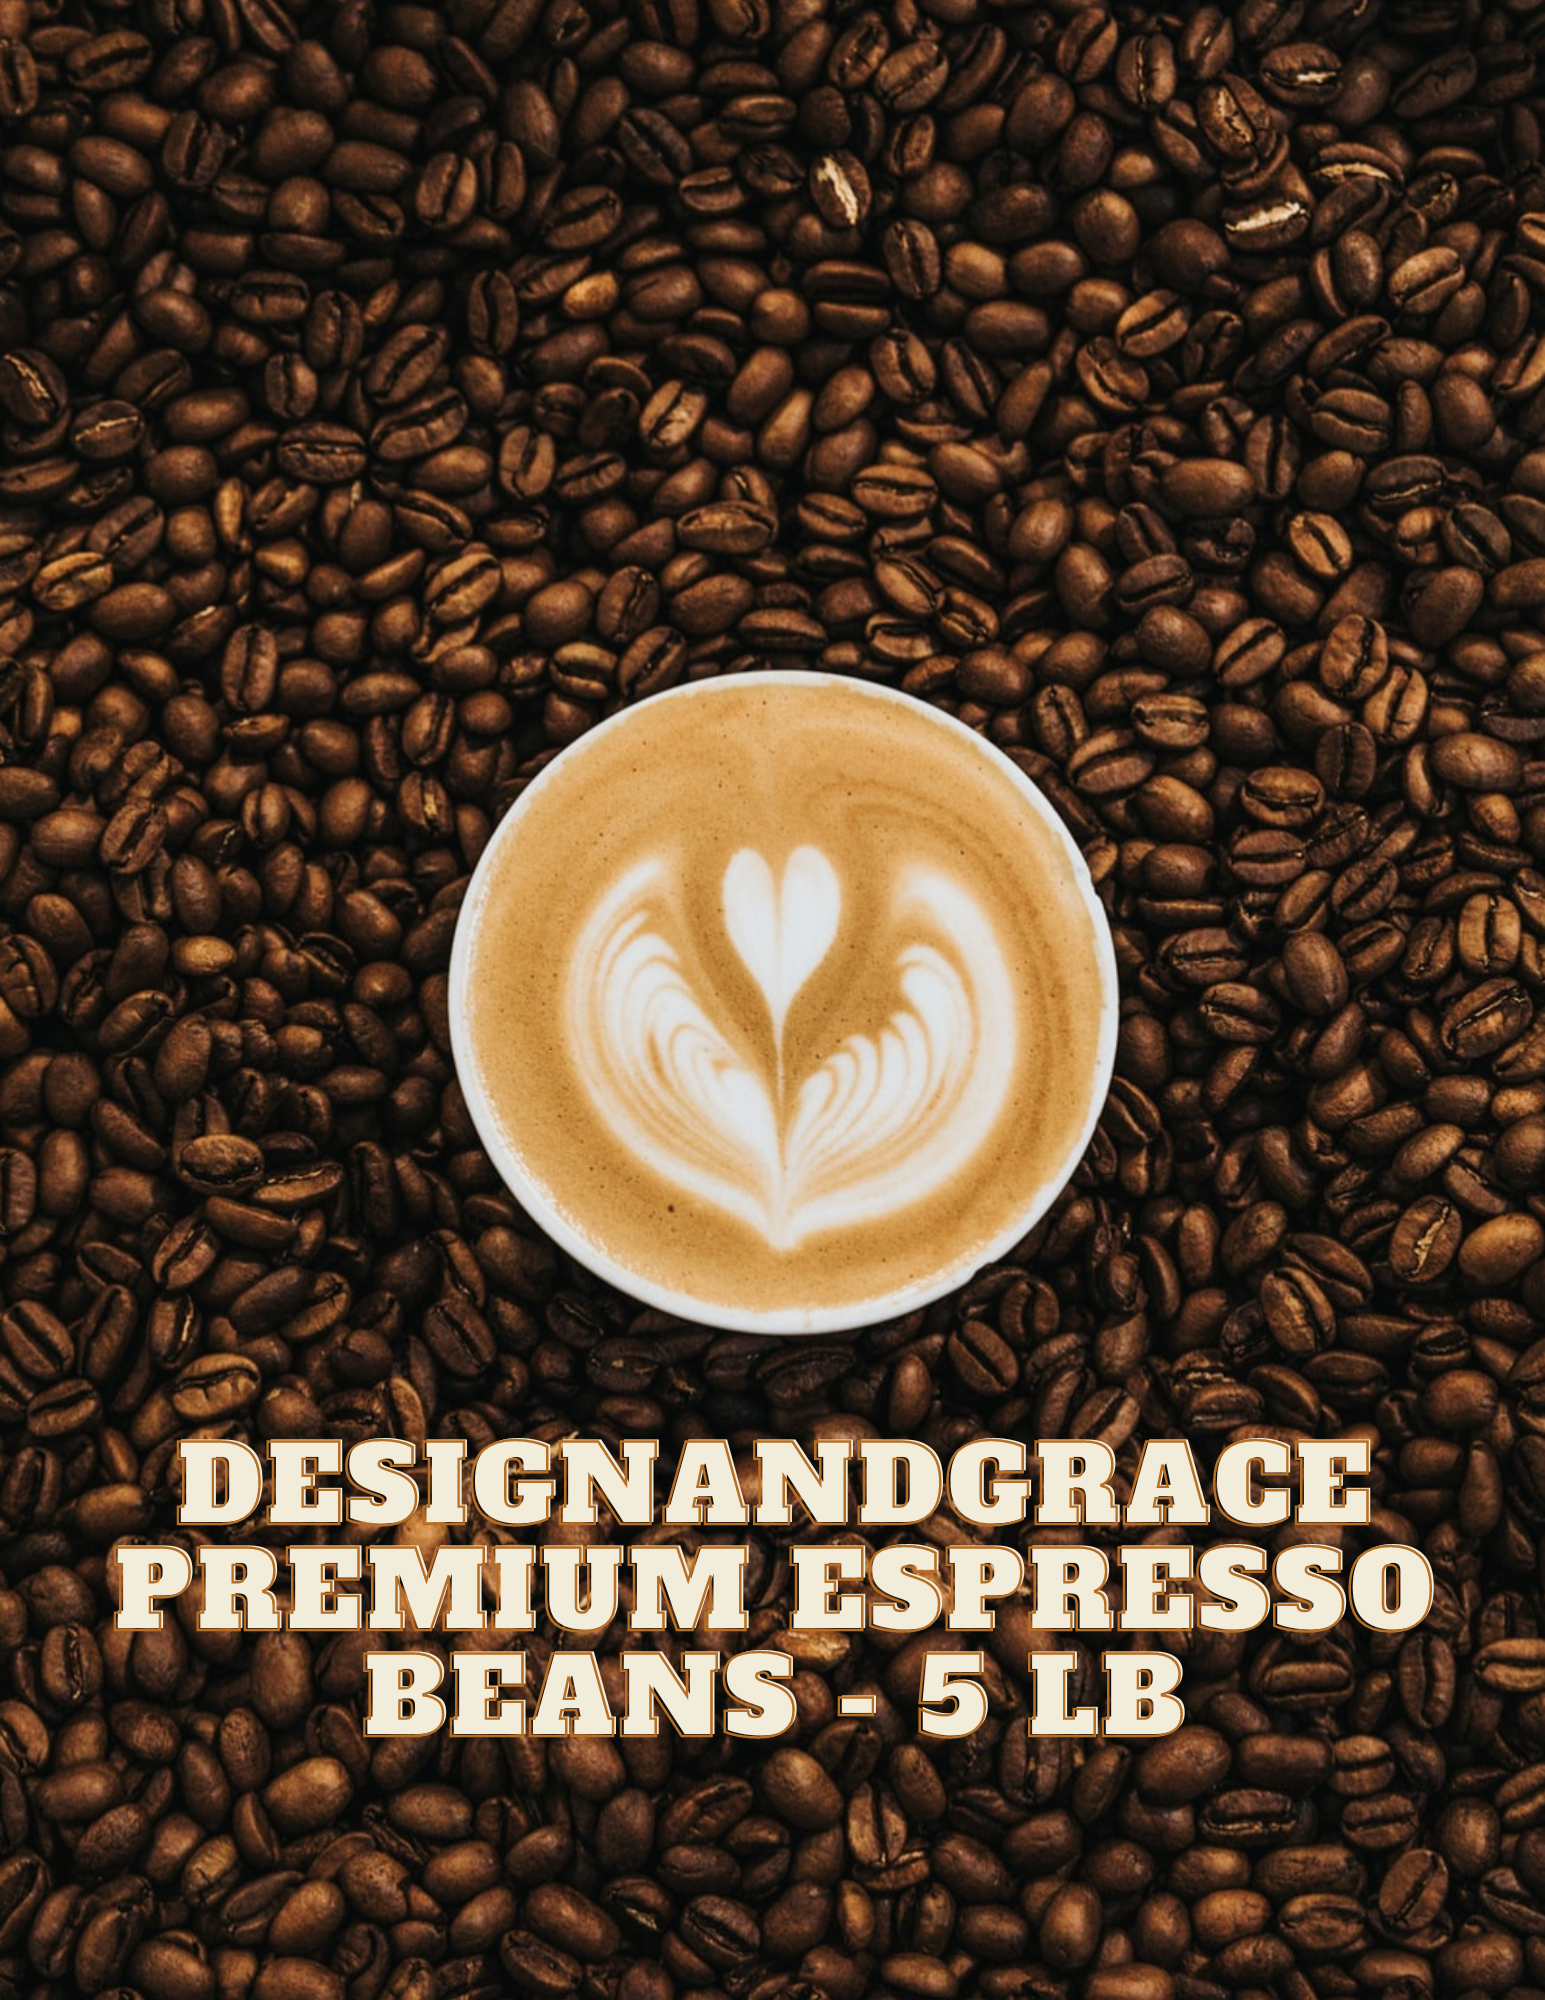 DesignandGrace Premium Espresso Coffee Beans - 5 lb